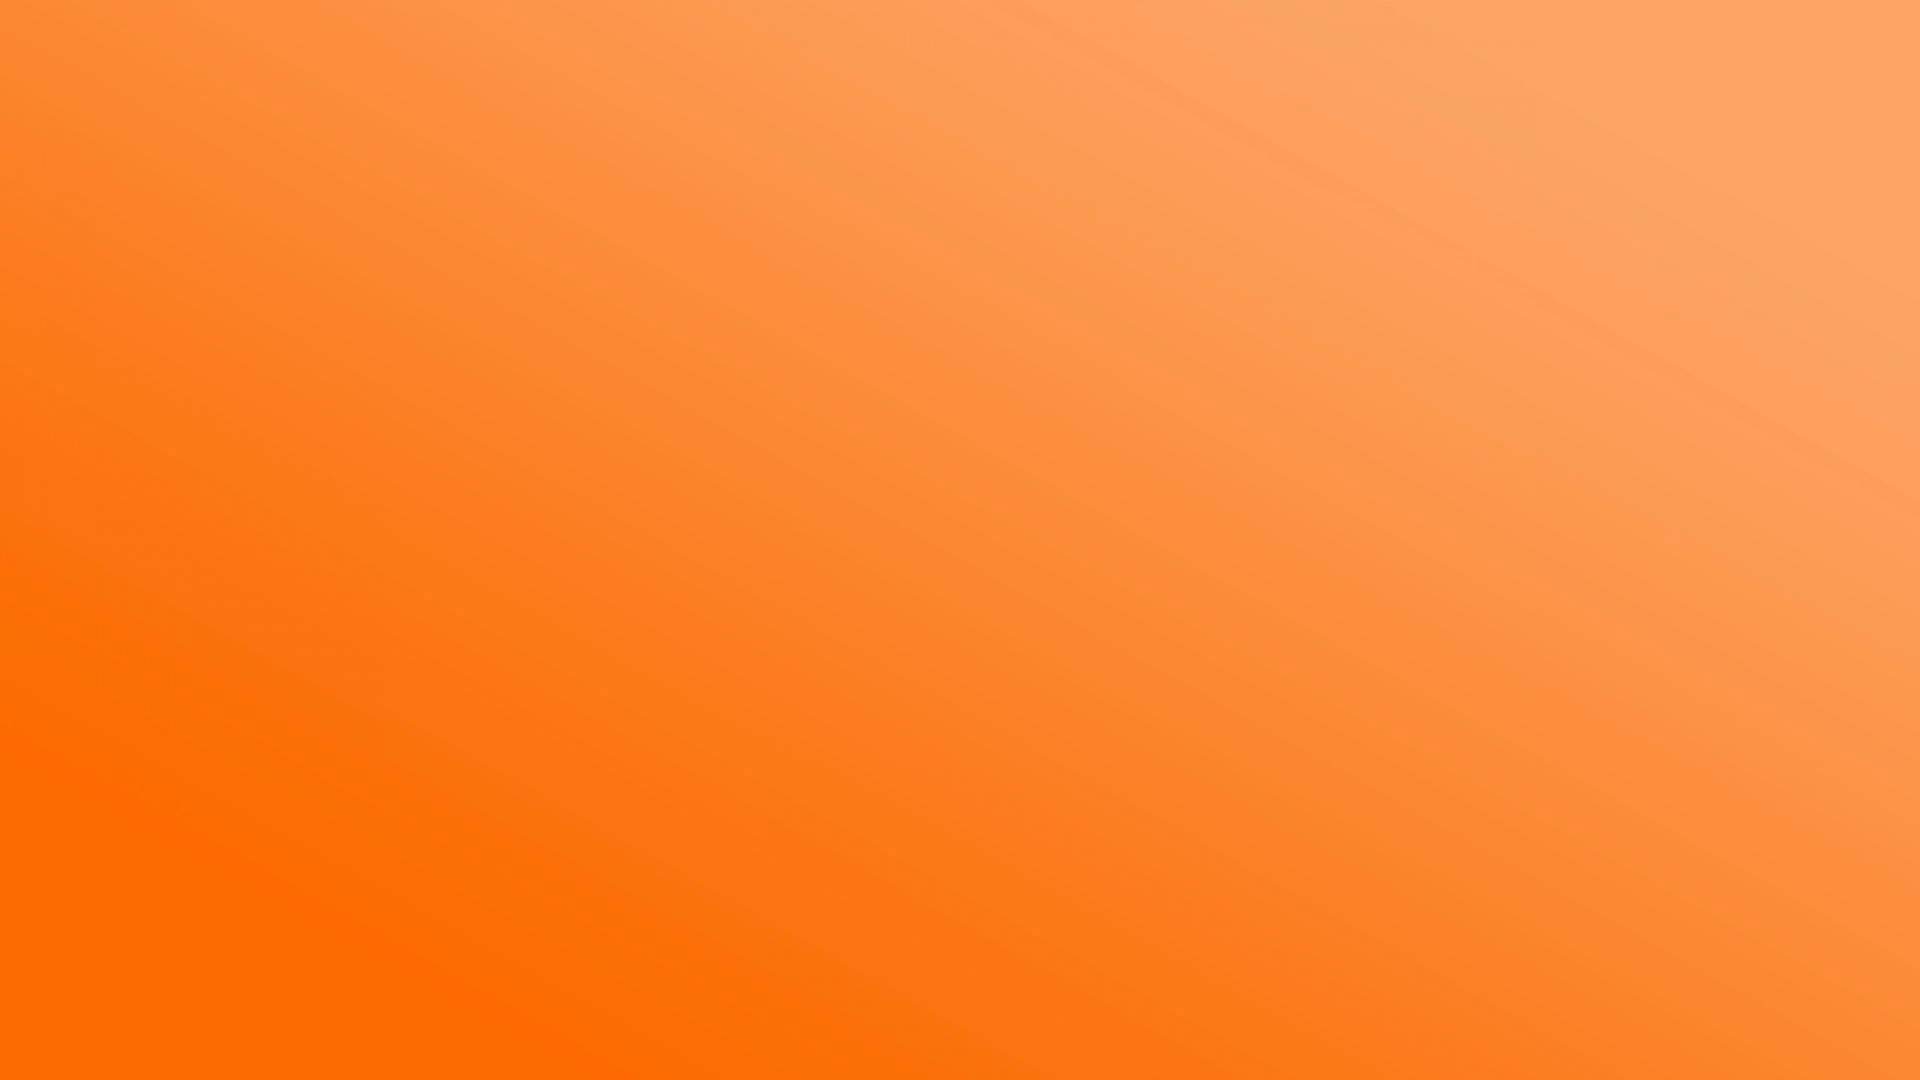 Plain Pastel Orange Aesthetic Background